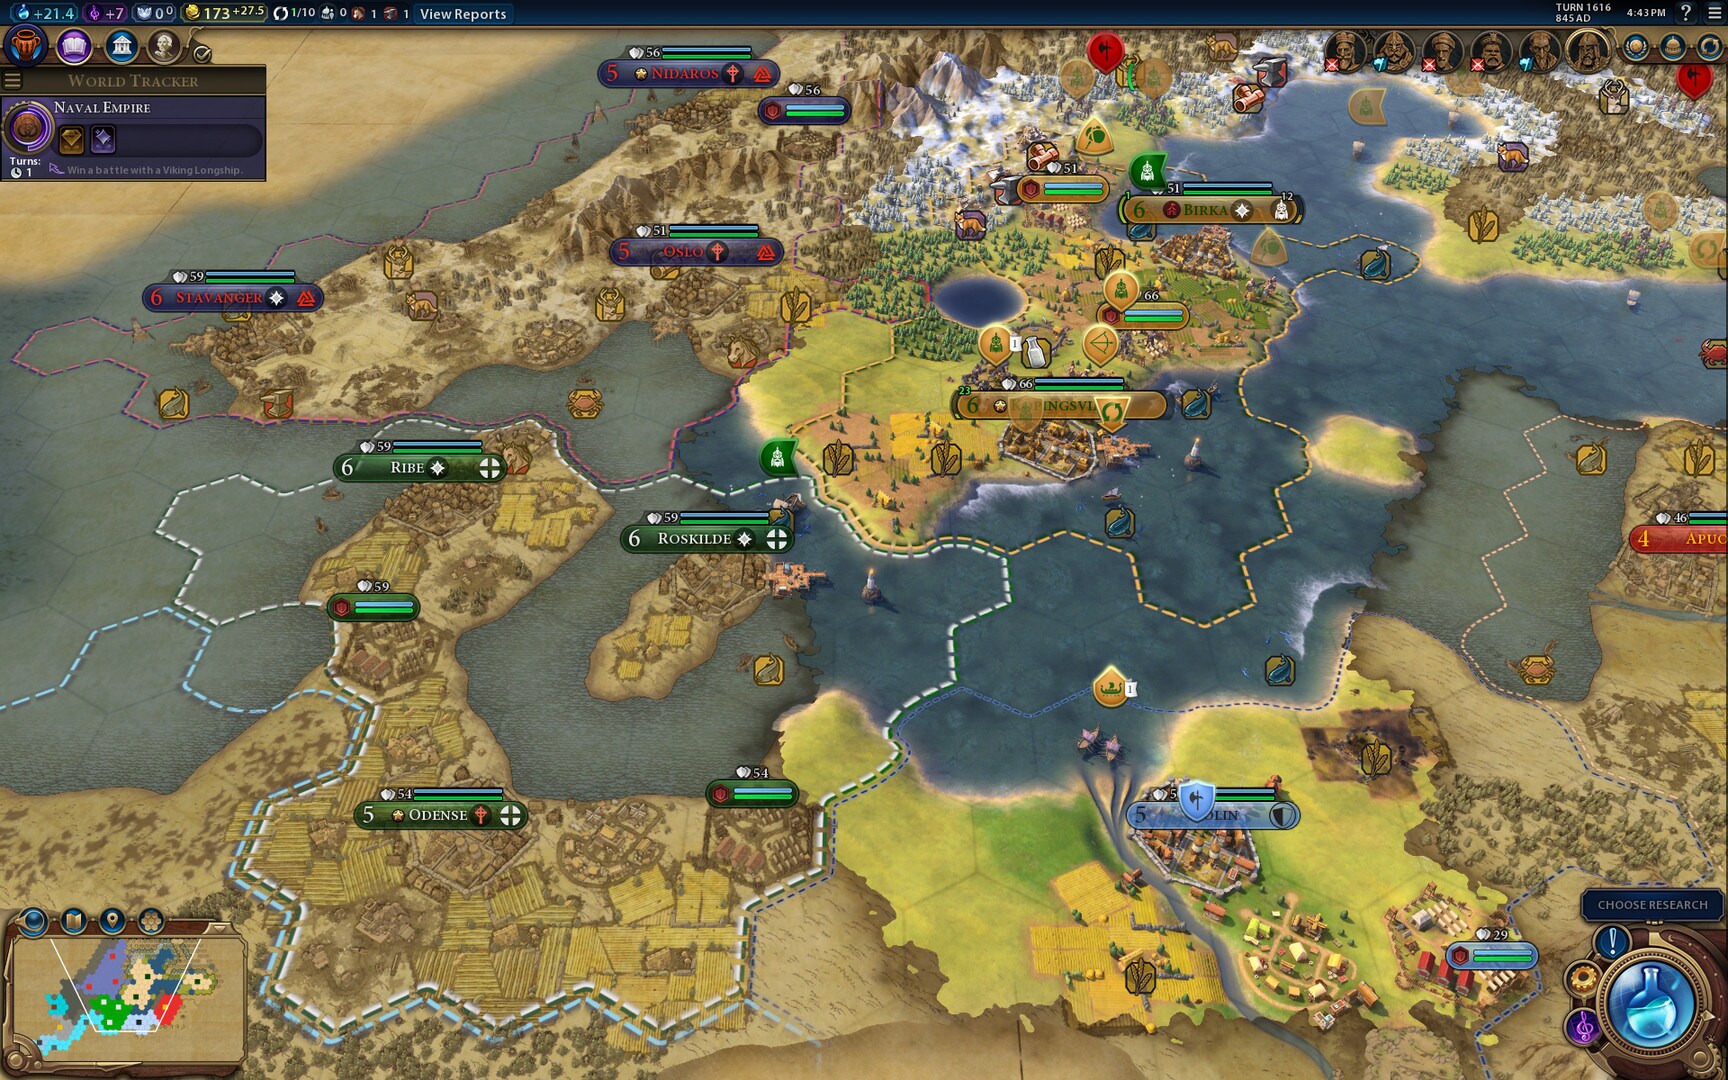 Sid Meier's Civilization VI - Vikings Scenario Pack Steam Key GLOBAL - 1